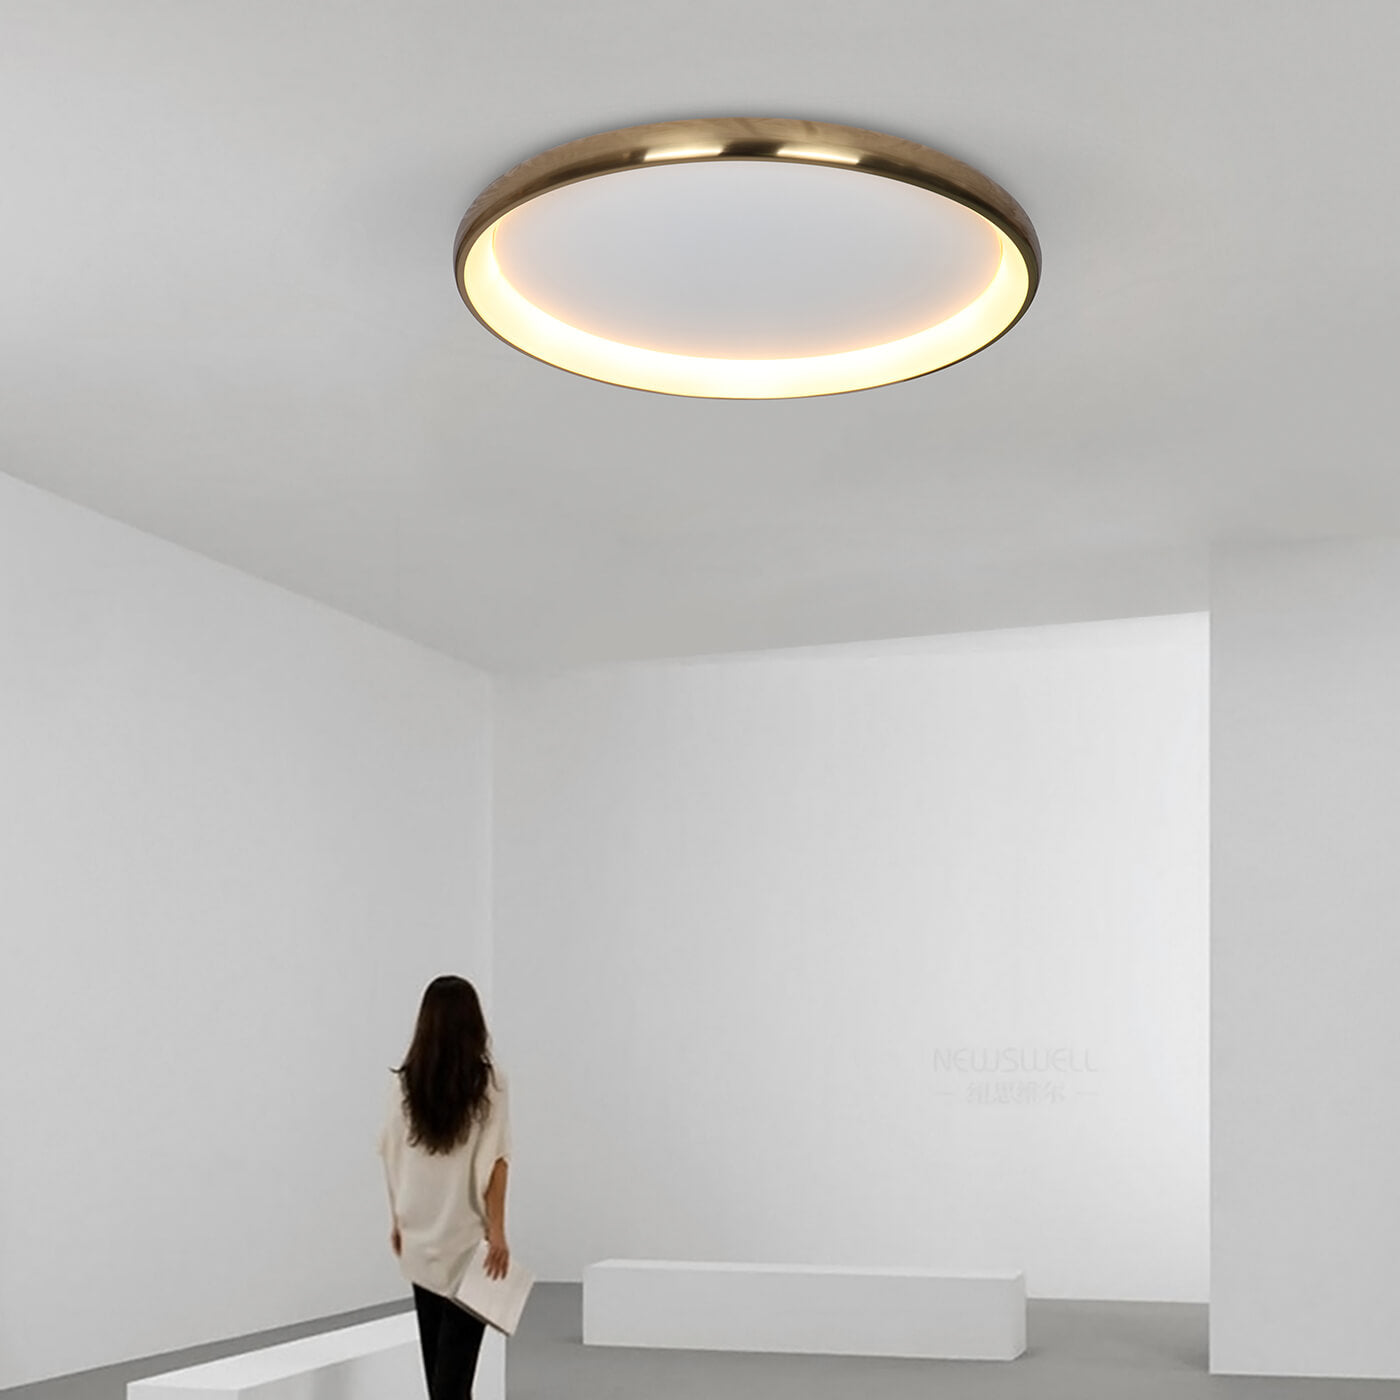 Cumpara Plafoniera aurie cu LED OTA M pentru dormitor. design minimalist, 2021, Domicilio